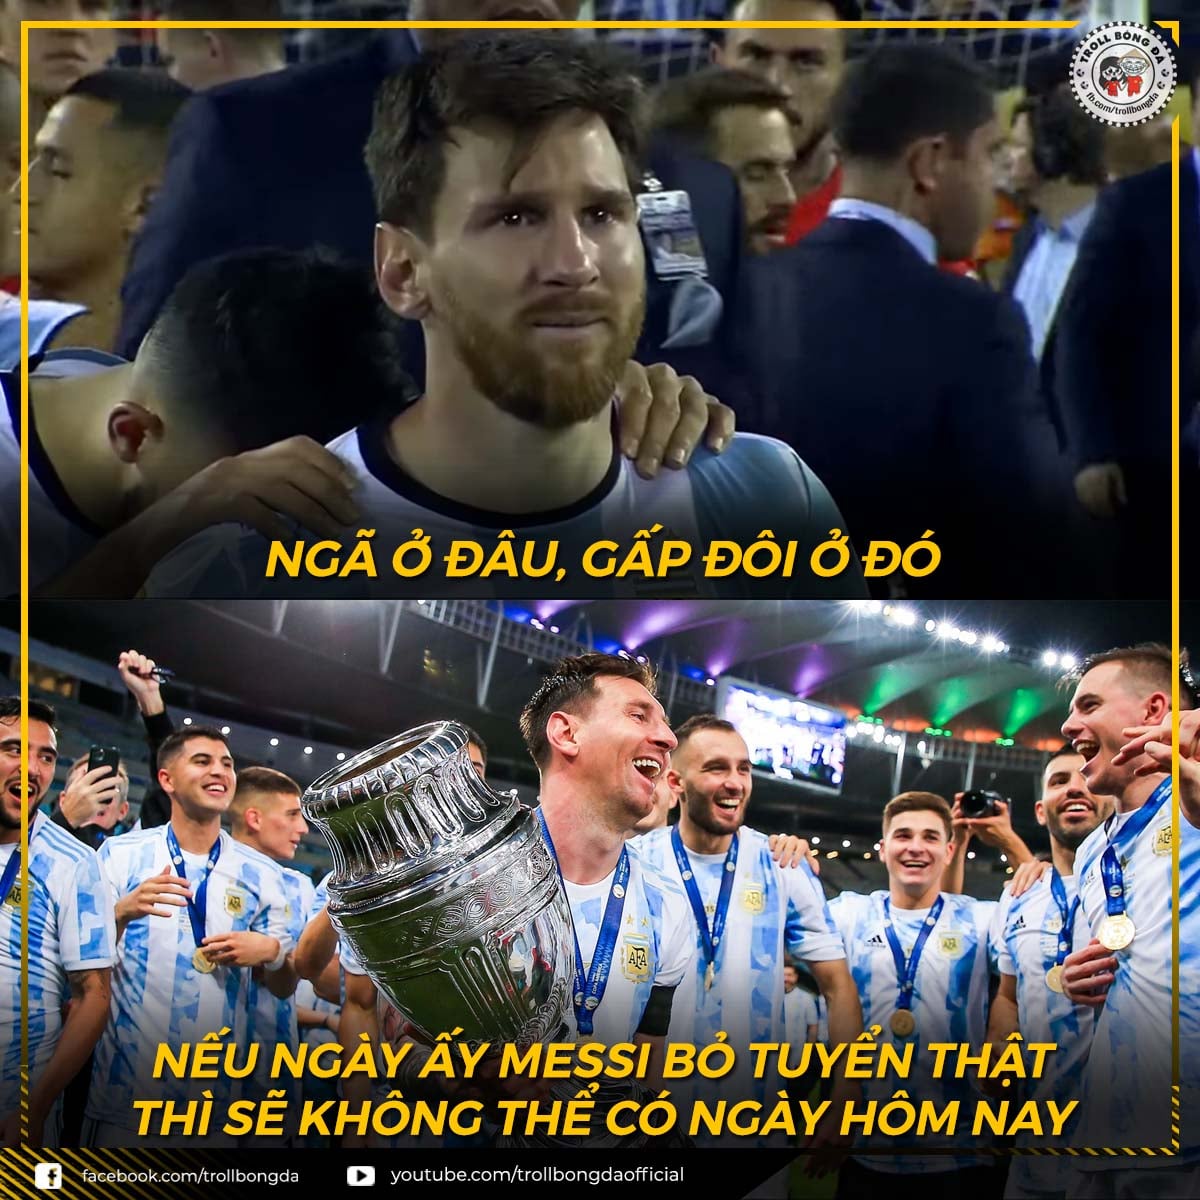 CĐV Việt Nam, chế ảnh, mừng, Messi, vô địch, Copa America 2021: Messi đã có được chiến thắng ở Copa America 2021 và cộng đồng CĐV Việt Nam không ngừng mừng rỡ cho thành tích đó. Họ đã tạo ra những bức ảnh chế tuyệt vời về Messi để thể hiện sự cảm kích và ngưỡng mộ của mình. Nhấn vào hình ảnh liên quan để xem những bức ảnh chế đó.